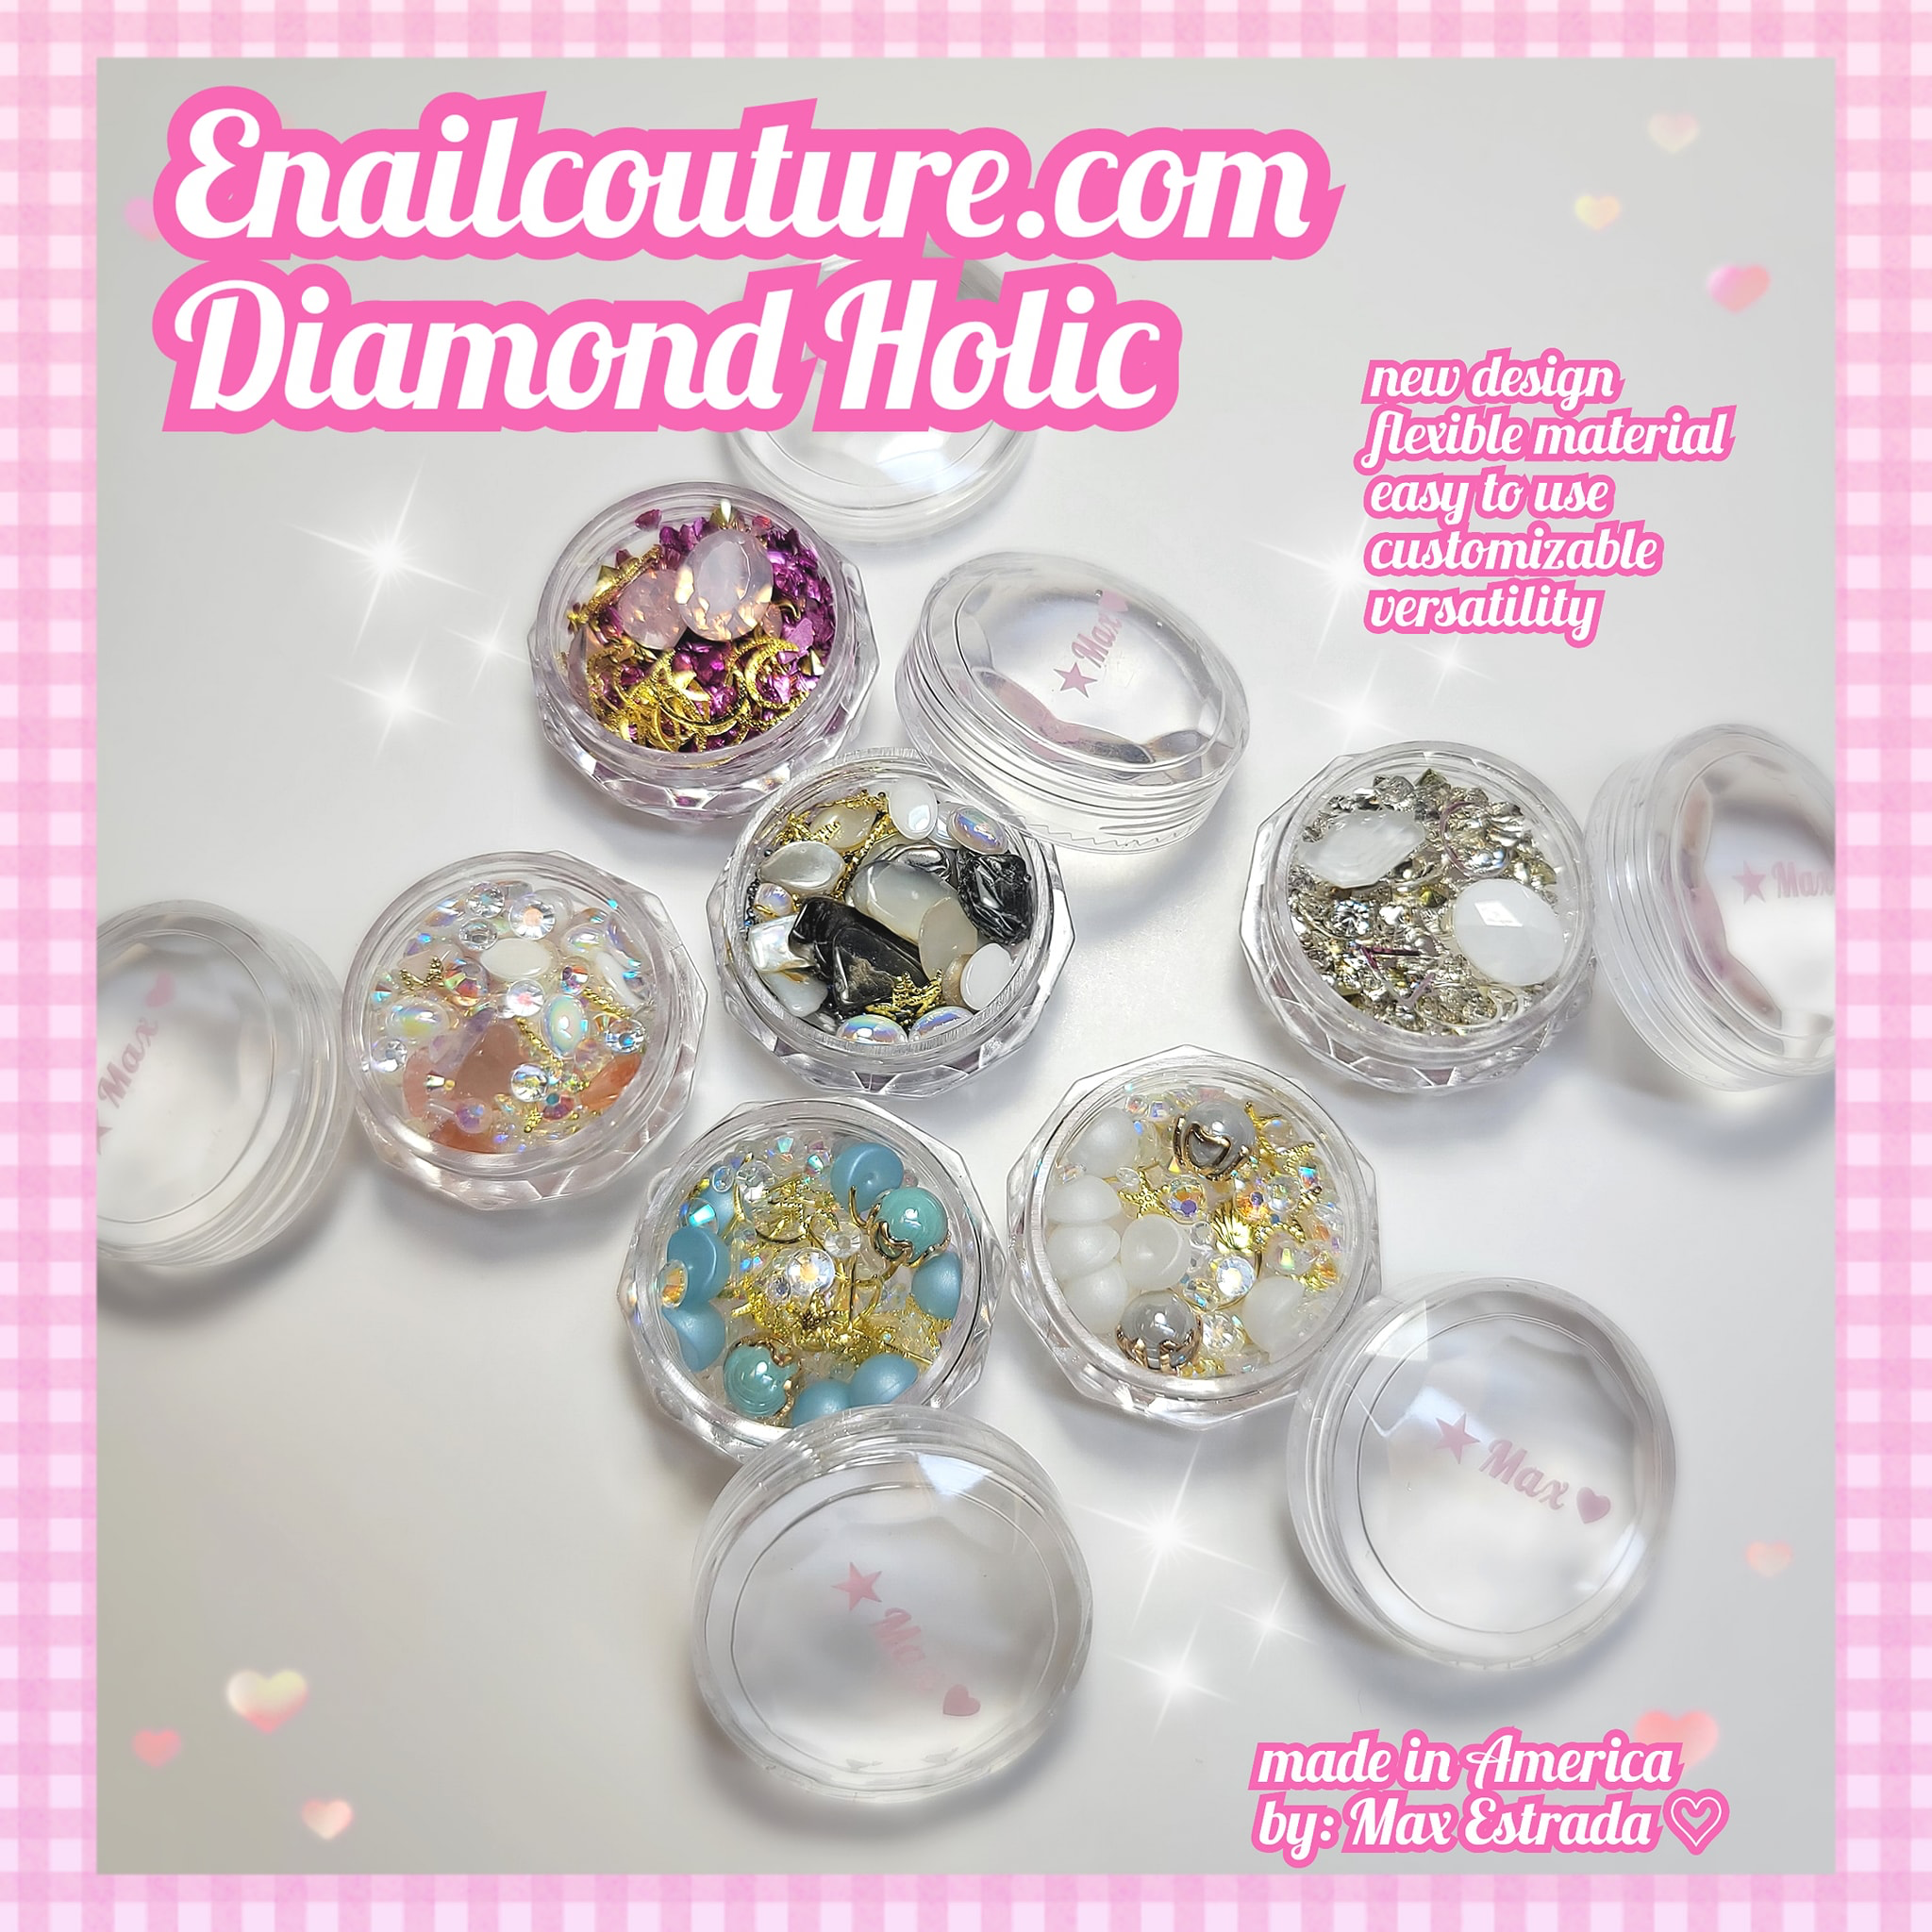 Diamond Holic (3D Metal Studs Charm Decoration Nail Art Studs Diamond Big Gem Pearls Crystals Beads Rhinestone Nail Rivet Set Nail Jewels Mix-shape Design Decoration)